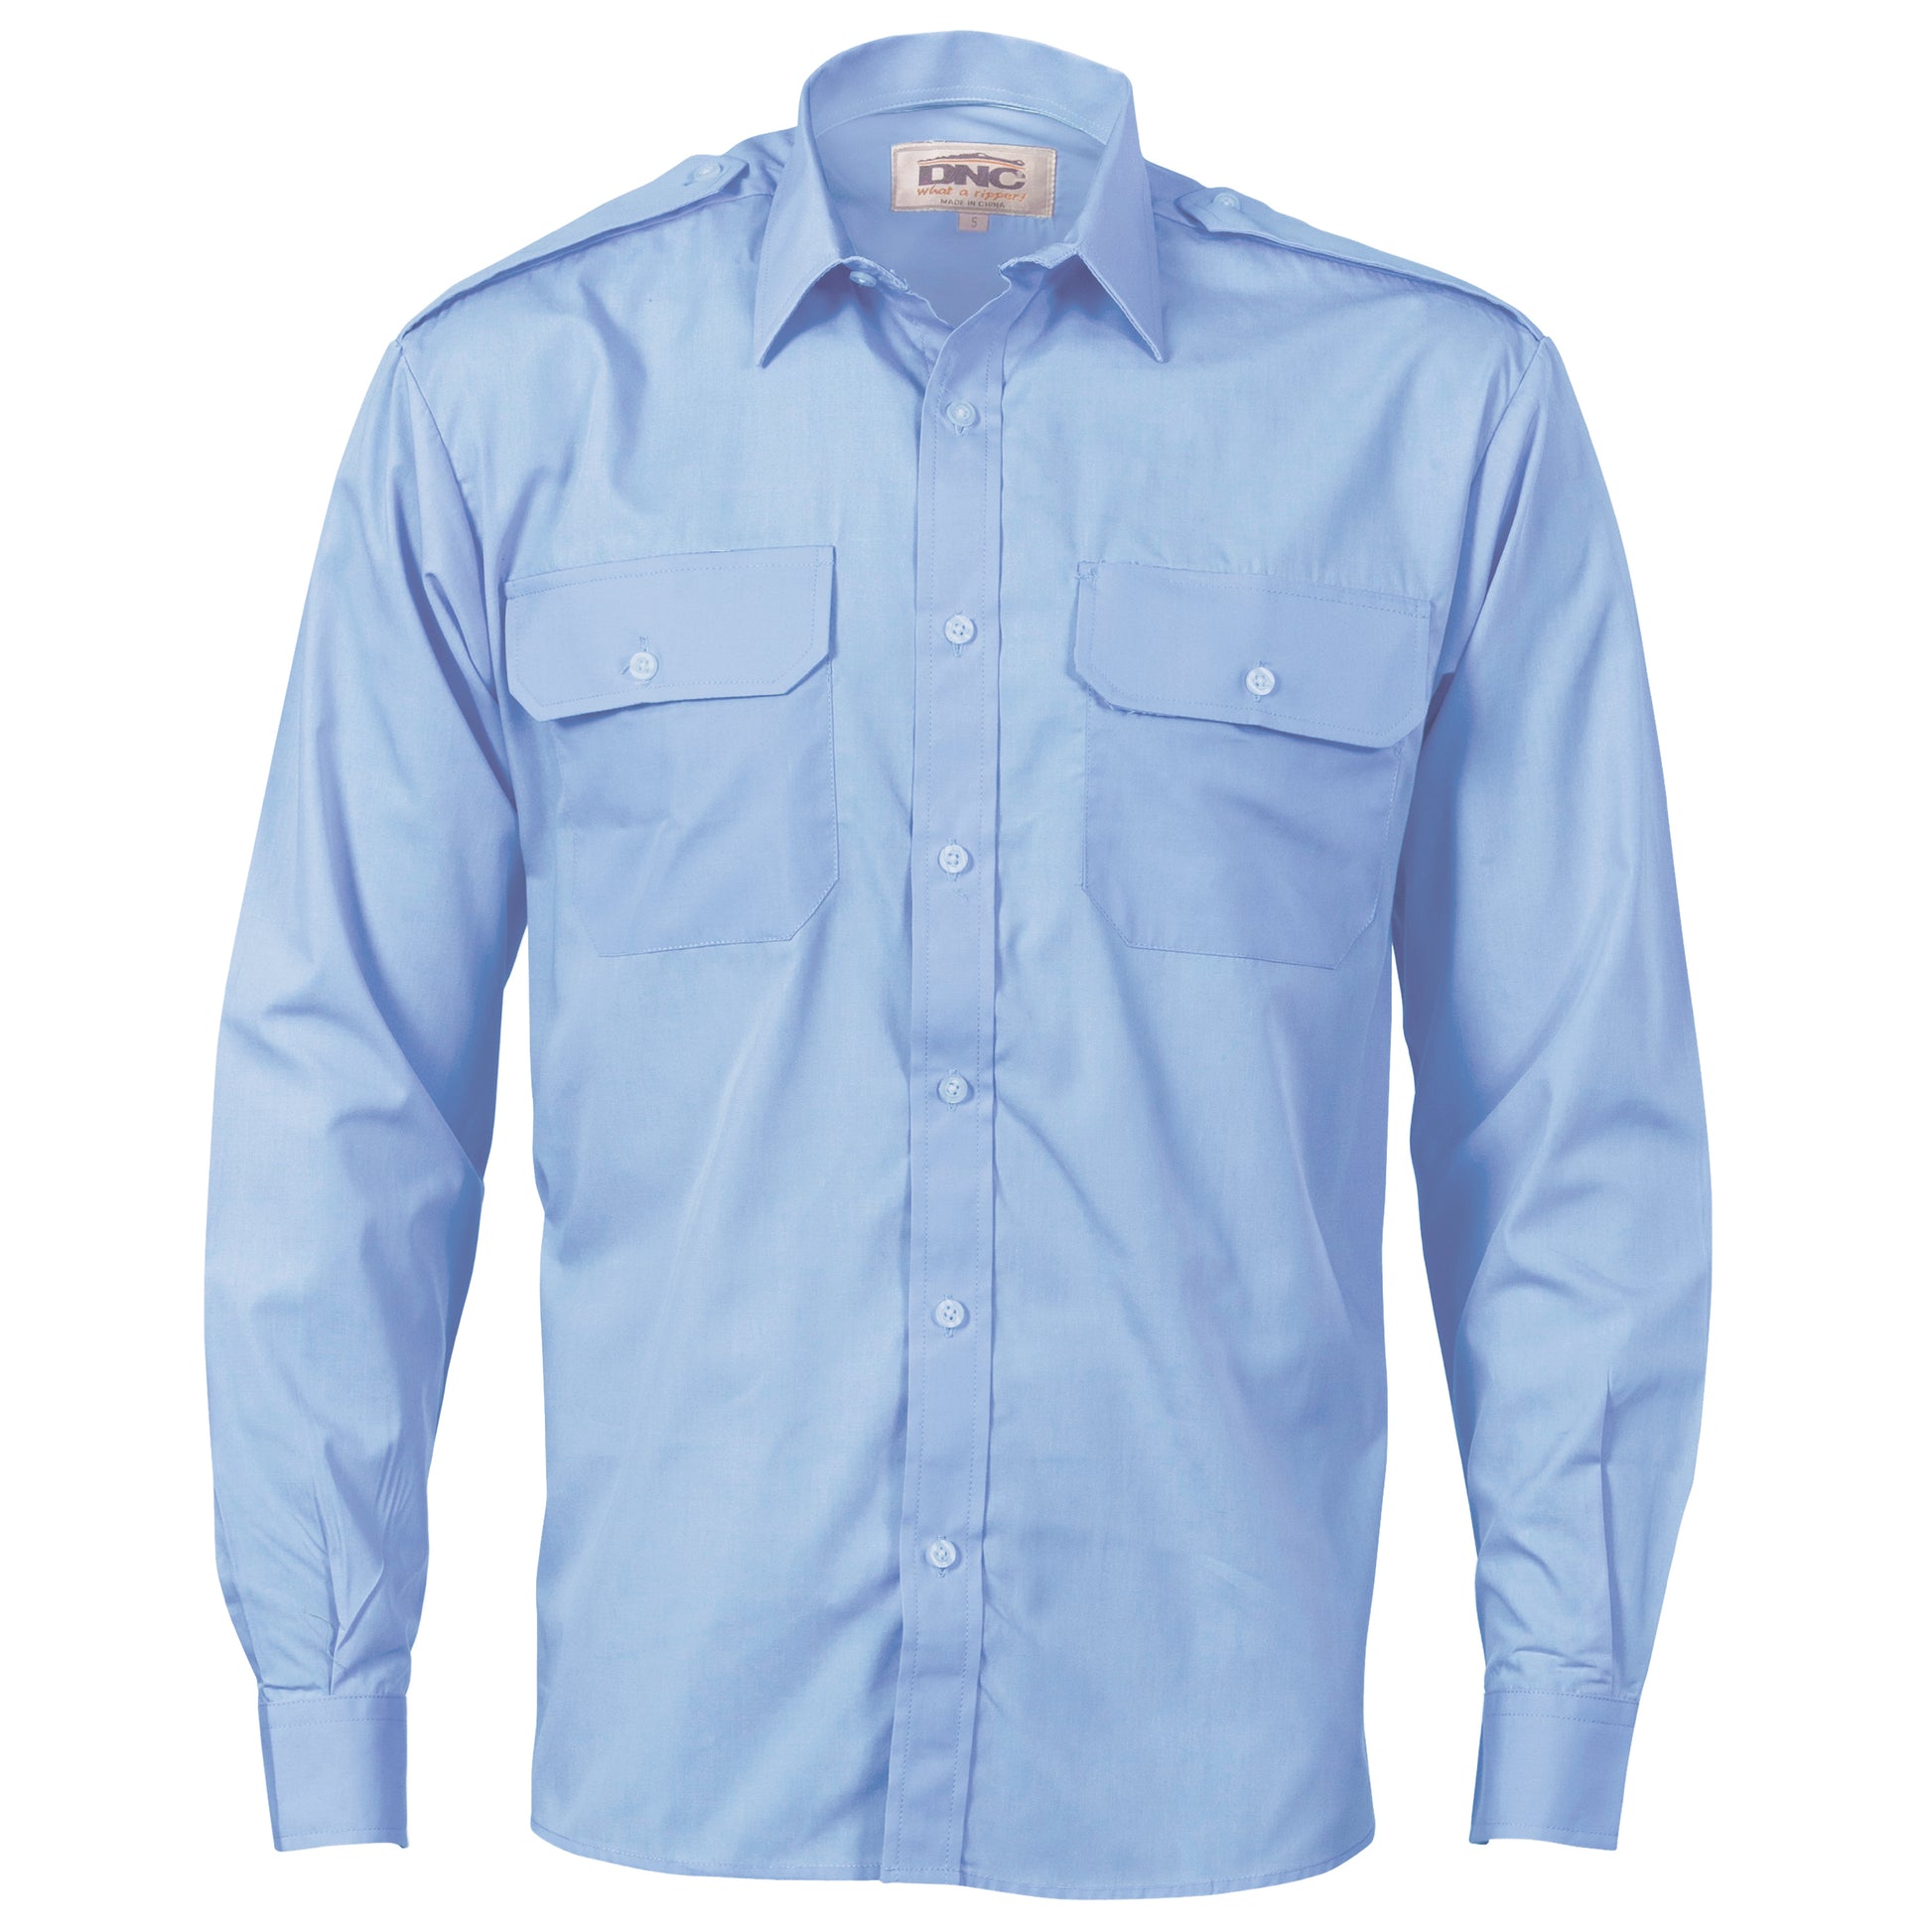 DNC Epaulette Polyester/Cotton Work Shirt - Long Sleeve 3214 - Star Uniforms Australia